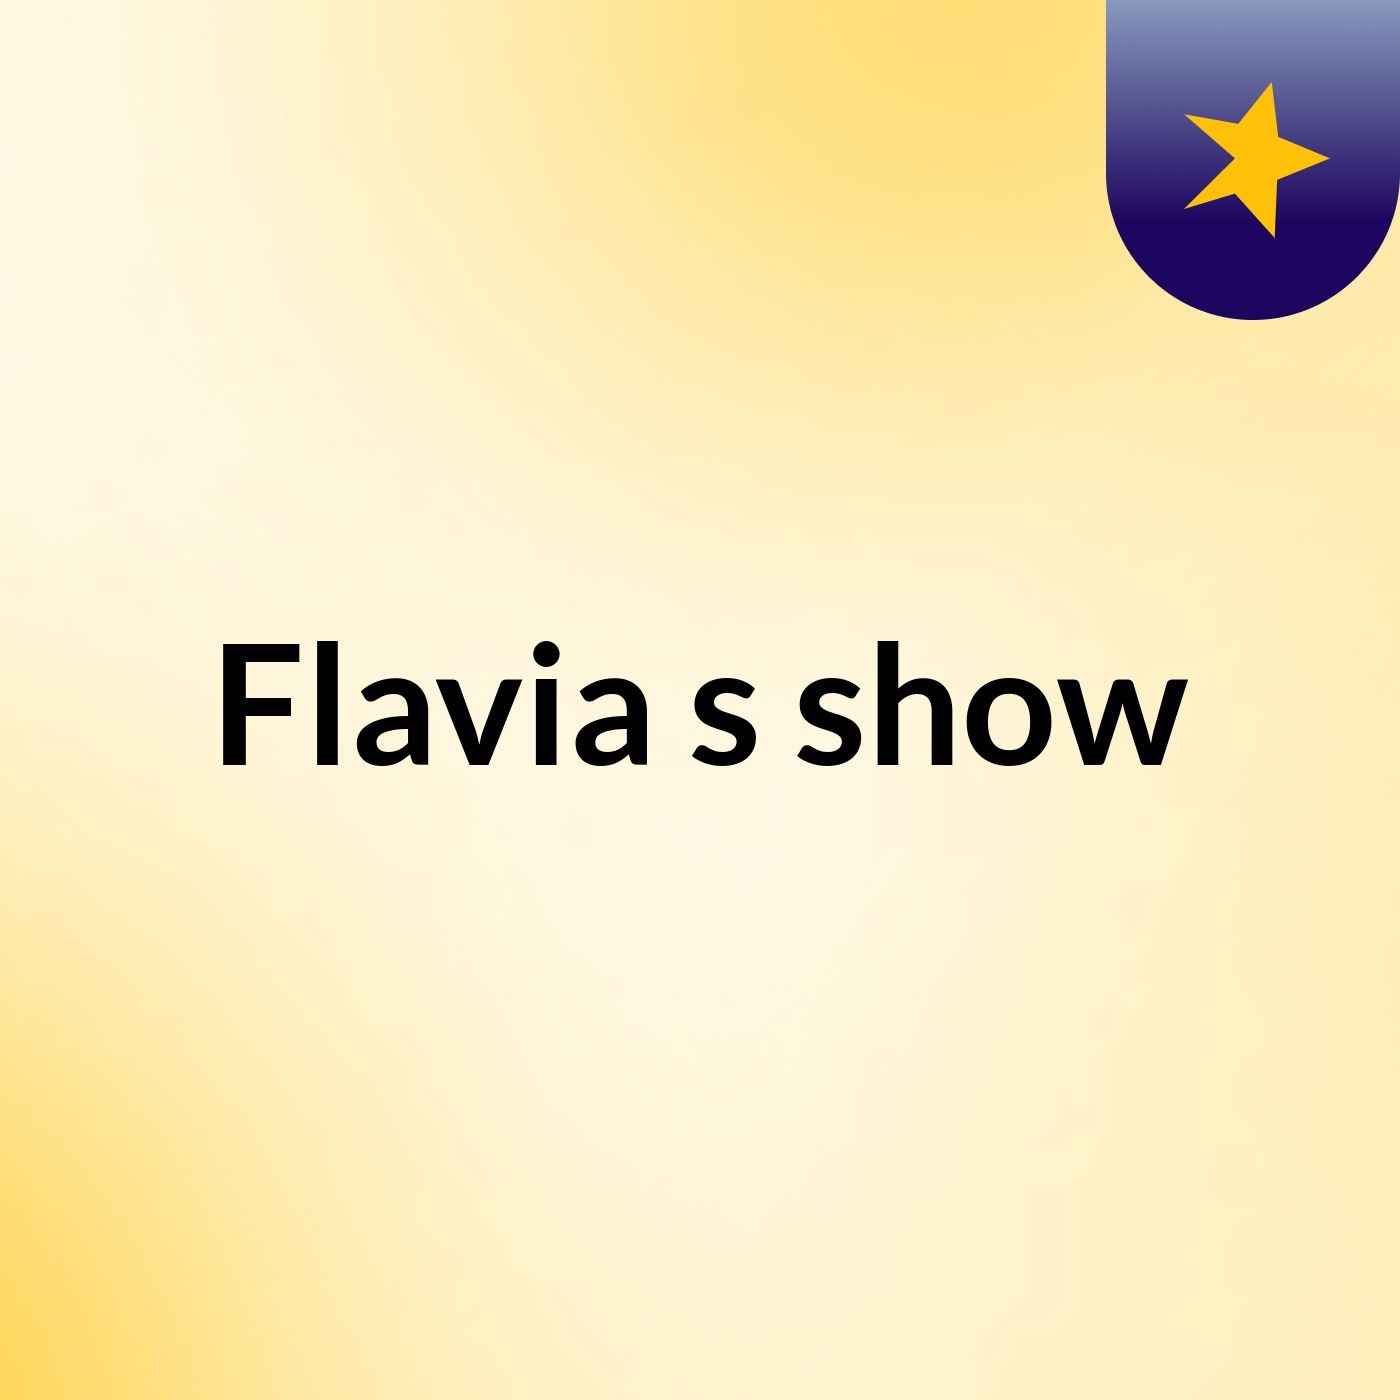 Flavia's show